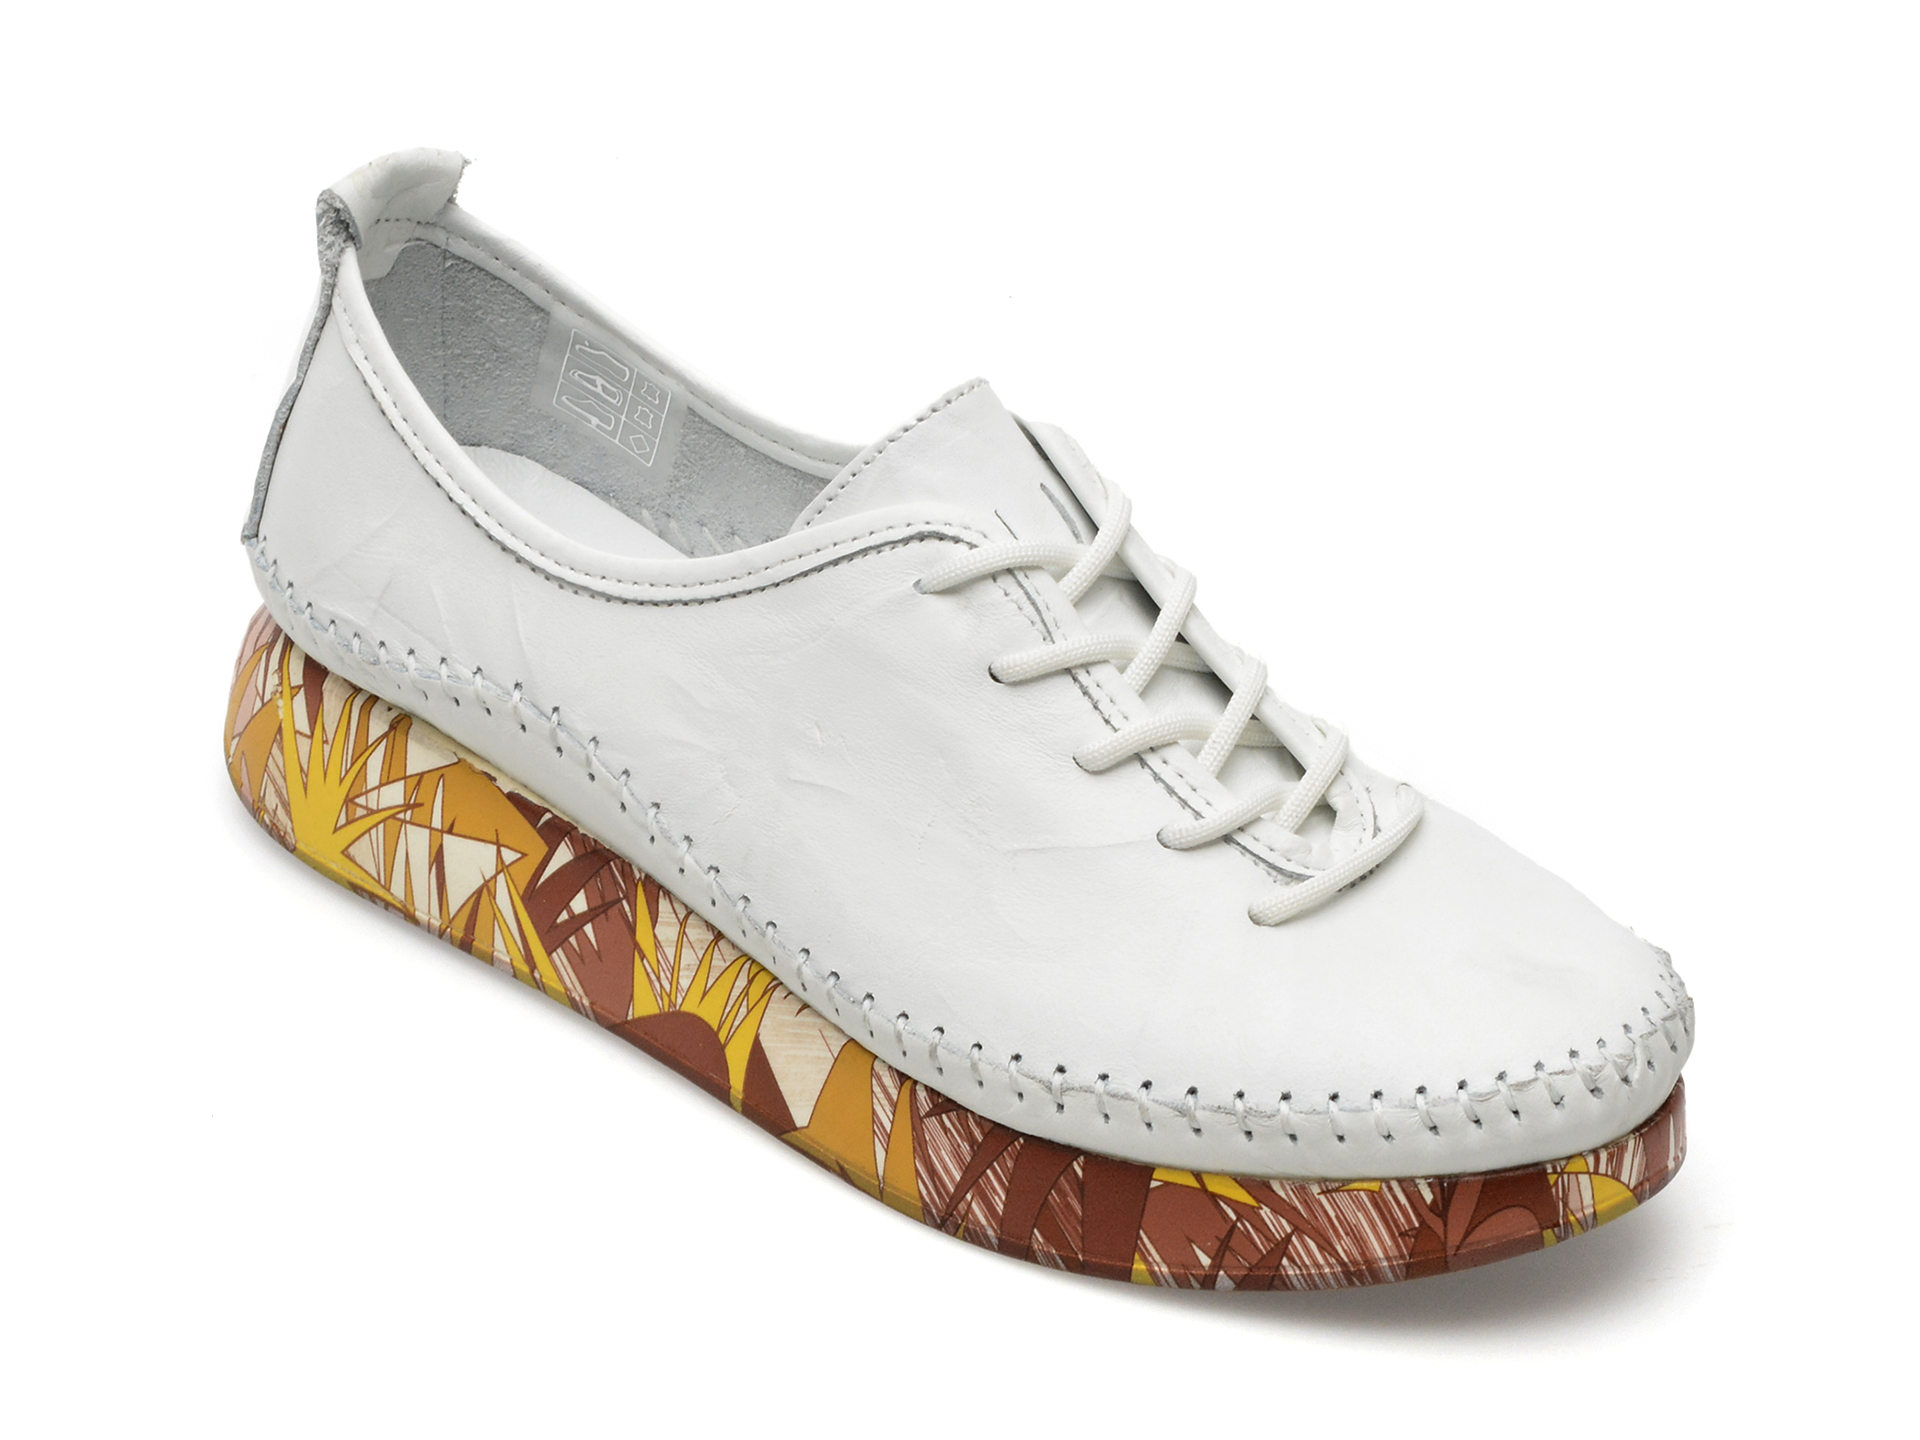 Pantofi GRYXX albi, 94381, din piele naturala